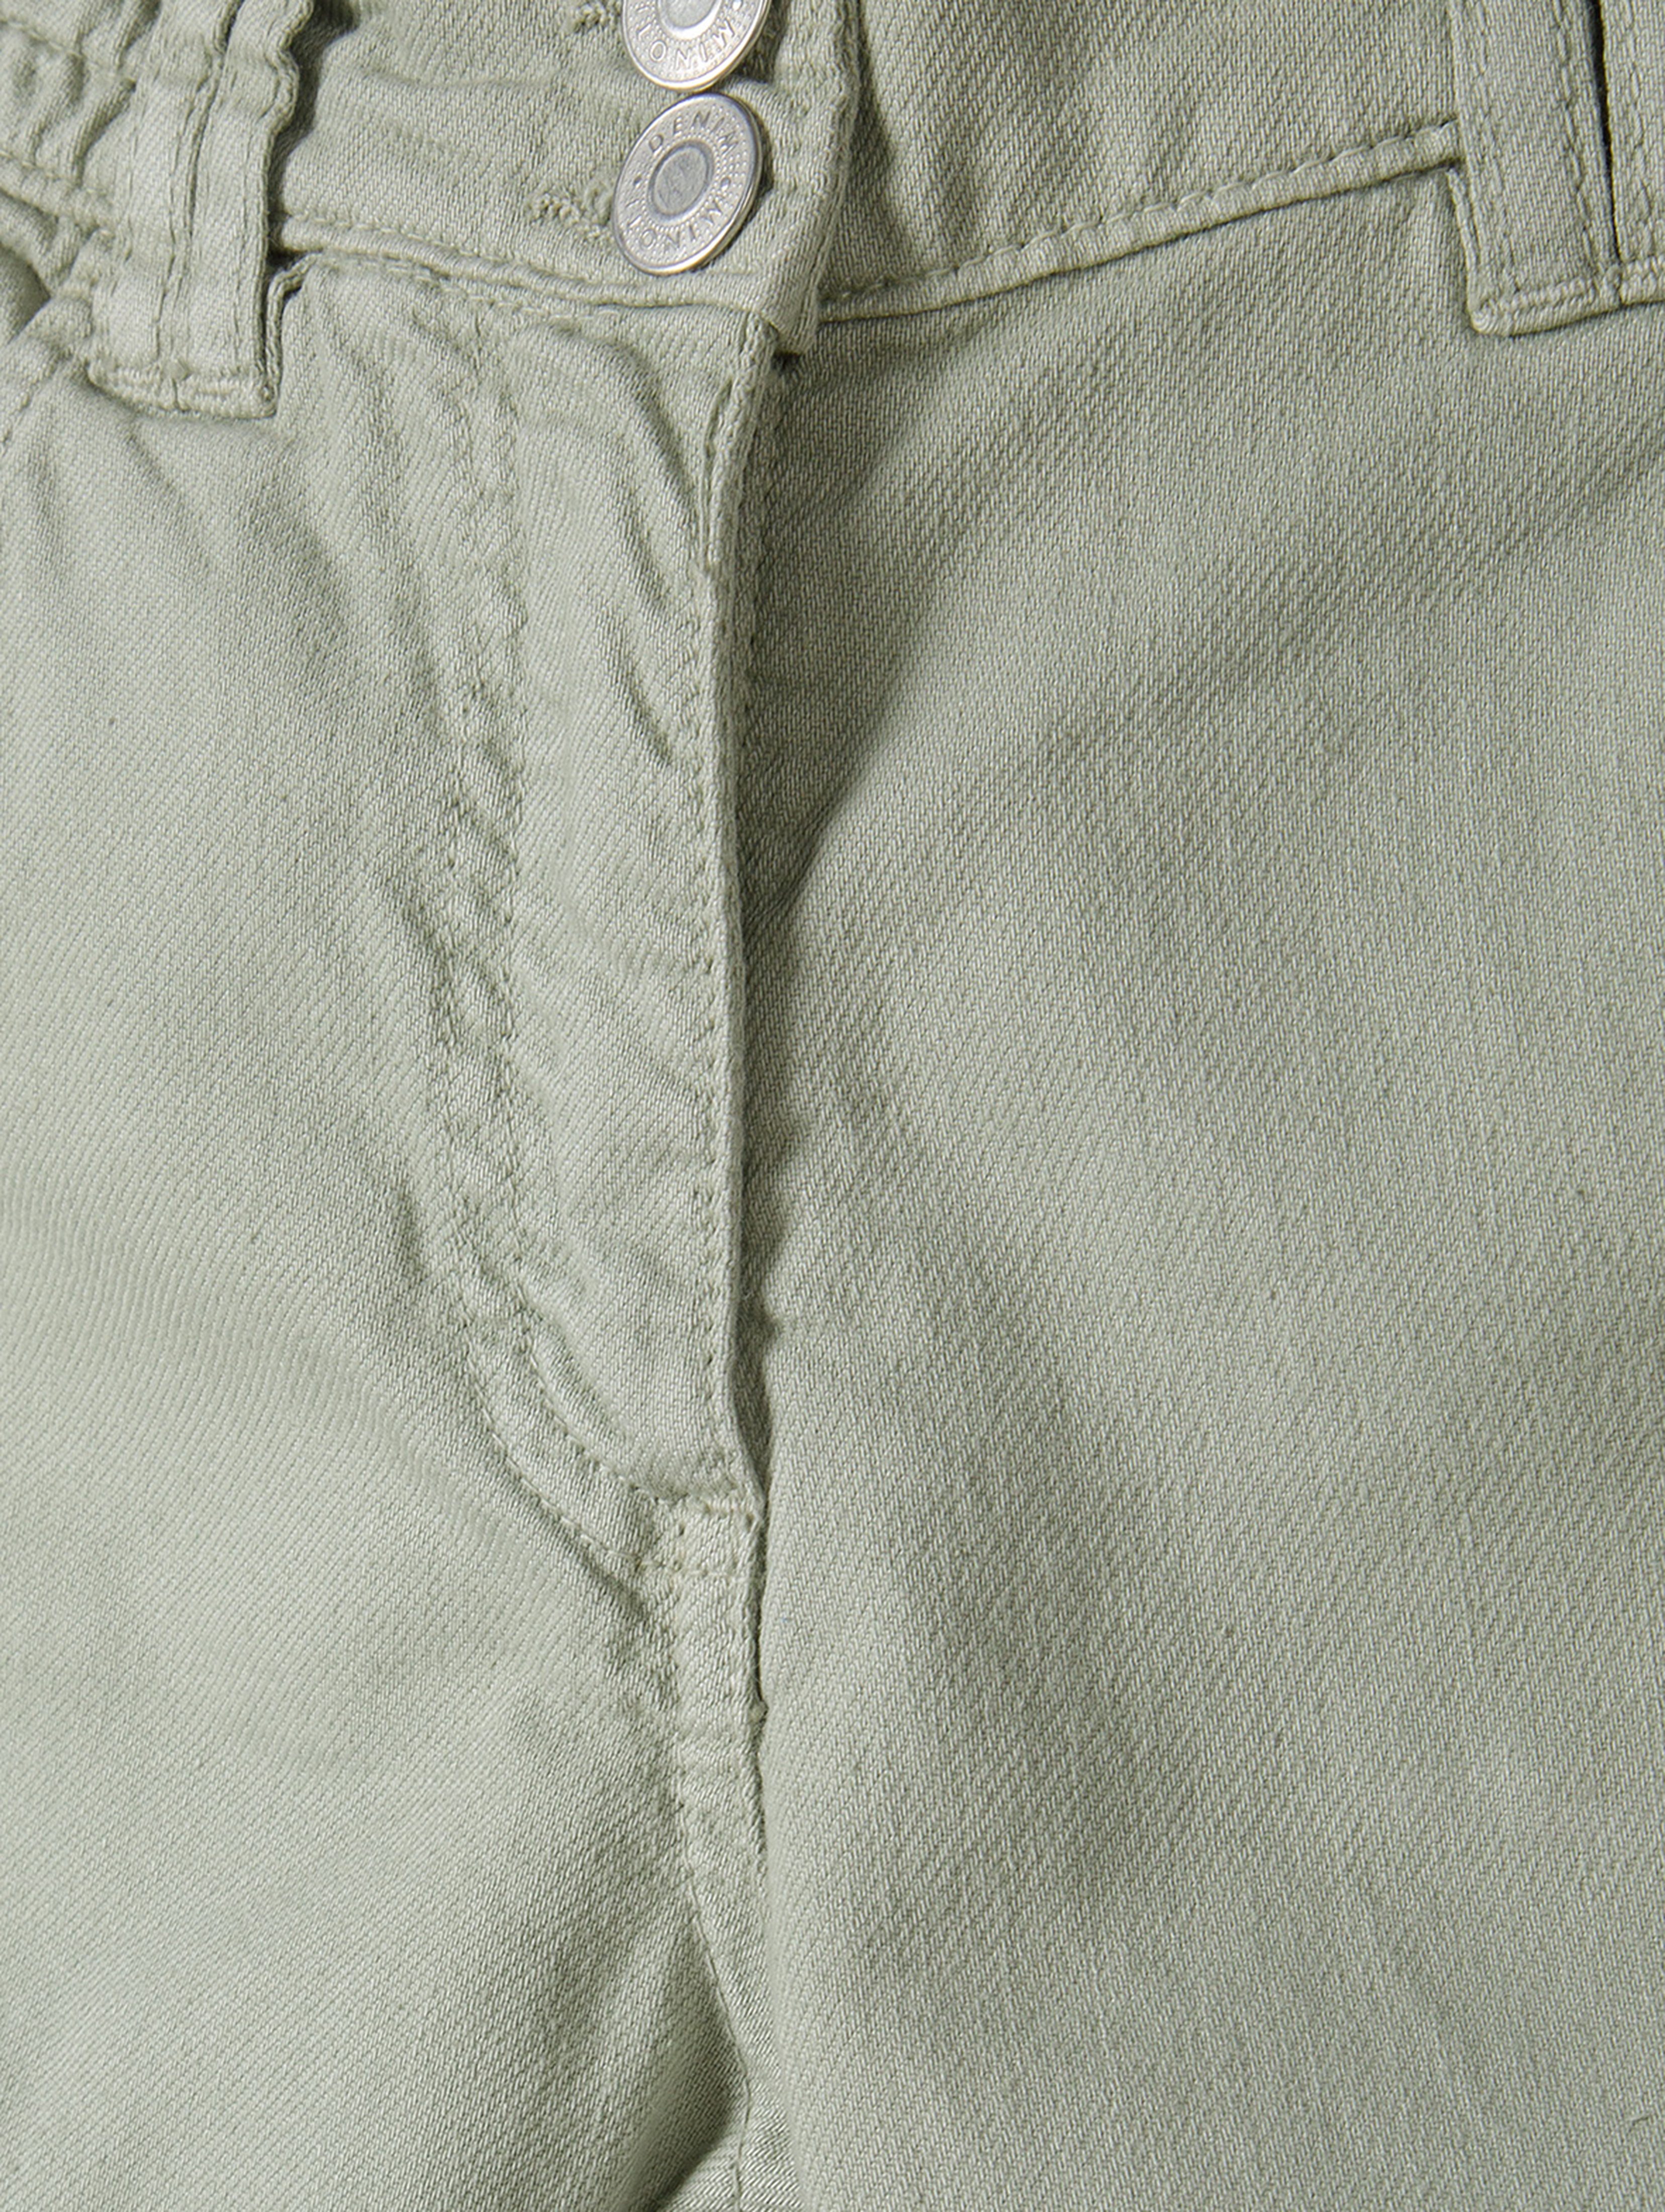 Spodnie typu bojówki z bawełny niemowlęce- oliwkowe